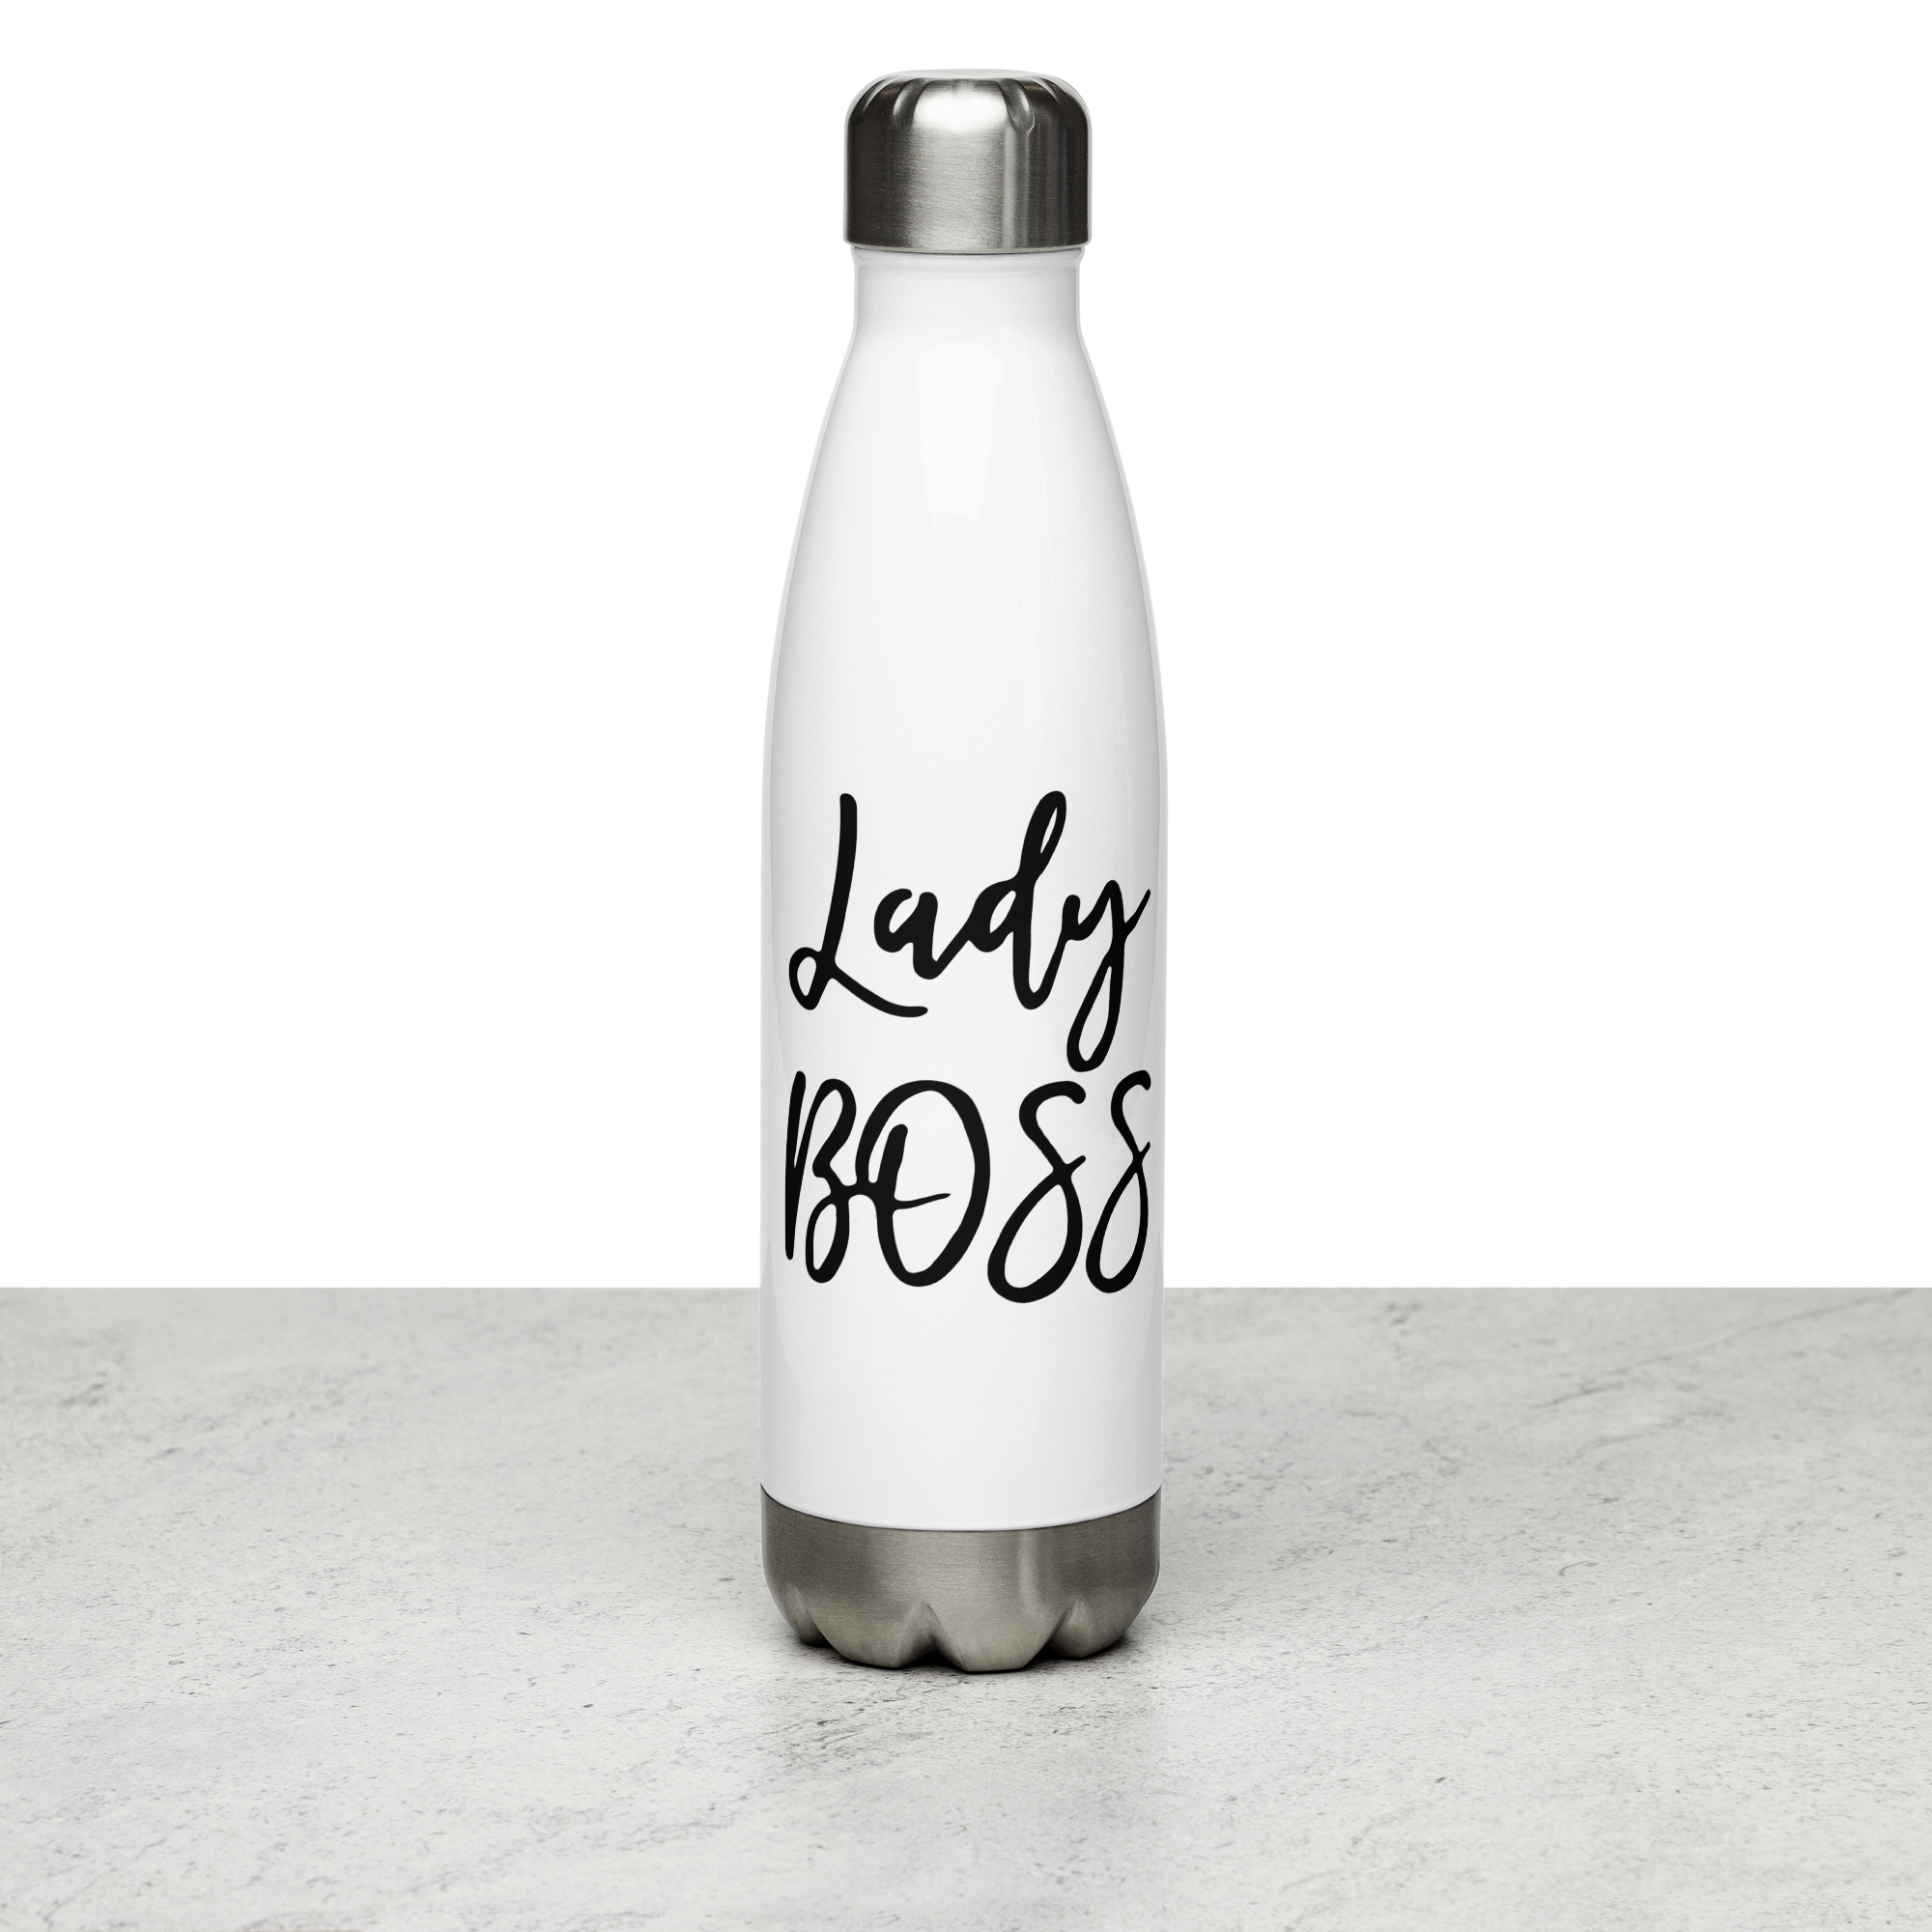 Lady BOSS Stainless Steel Water Bottle